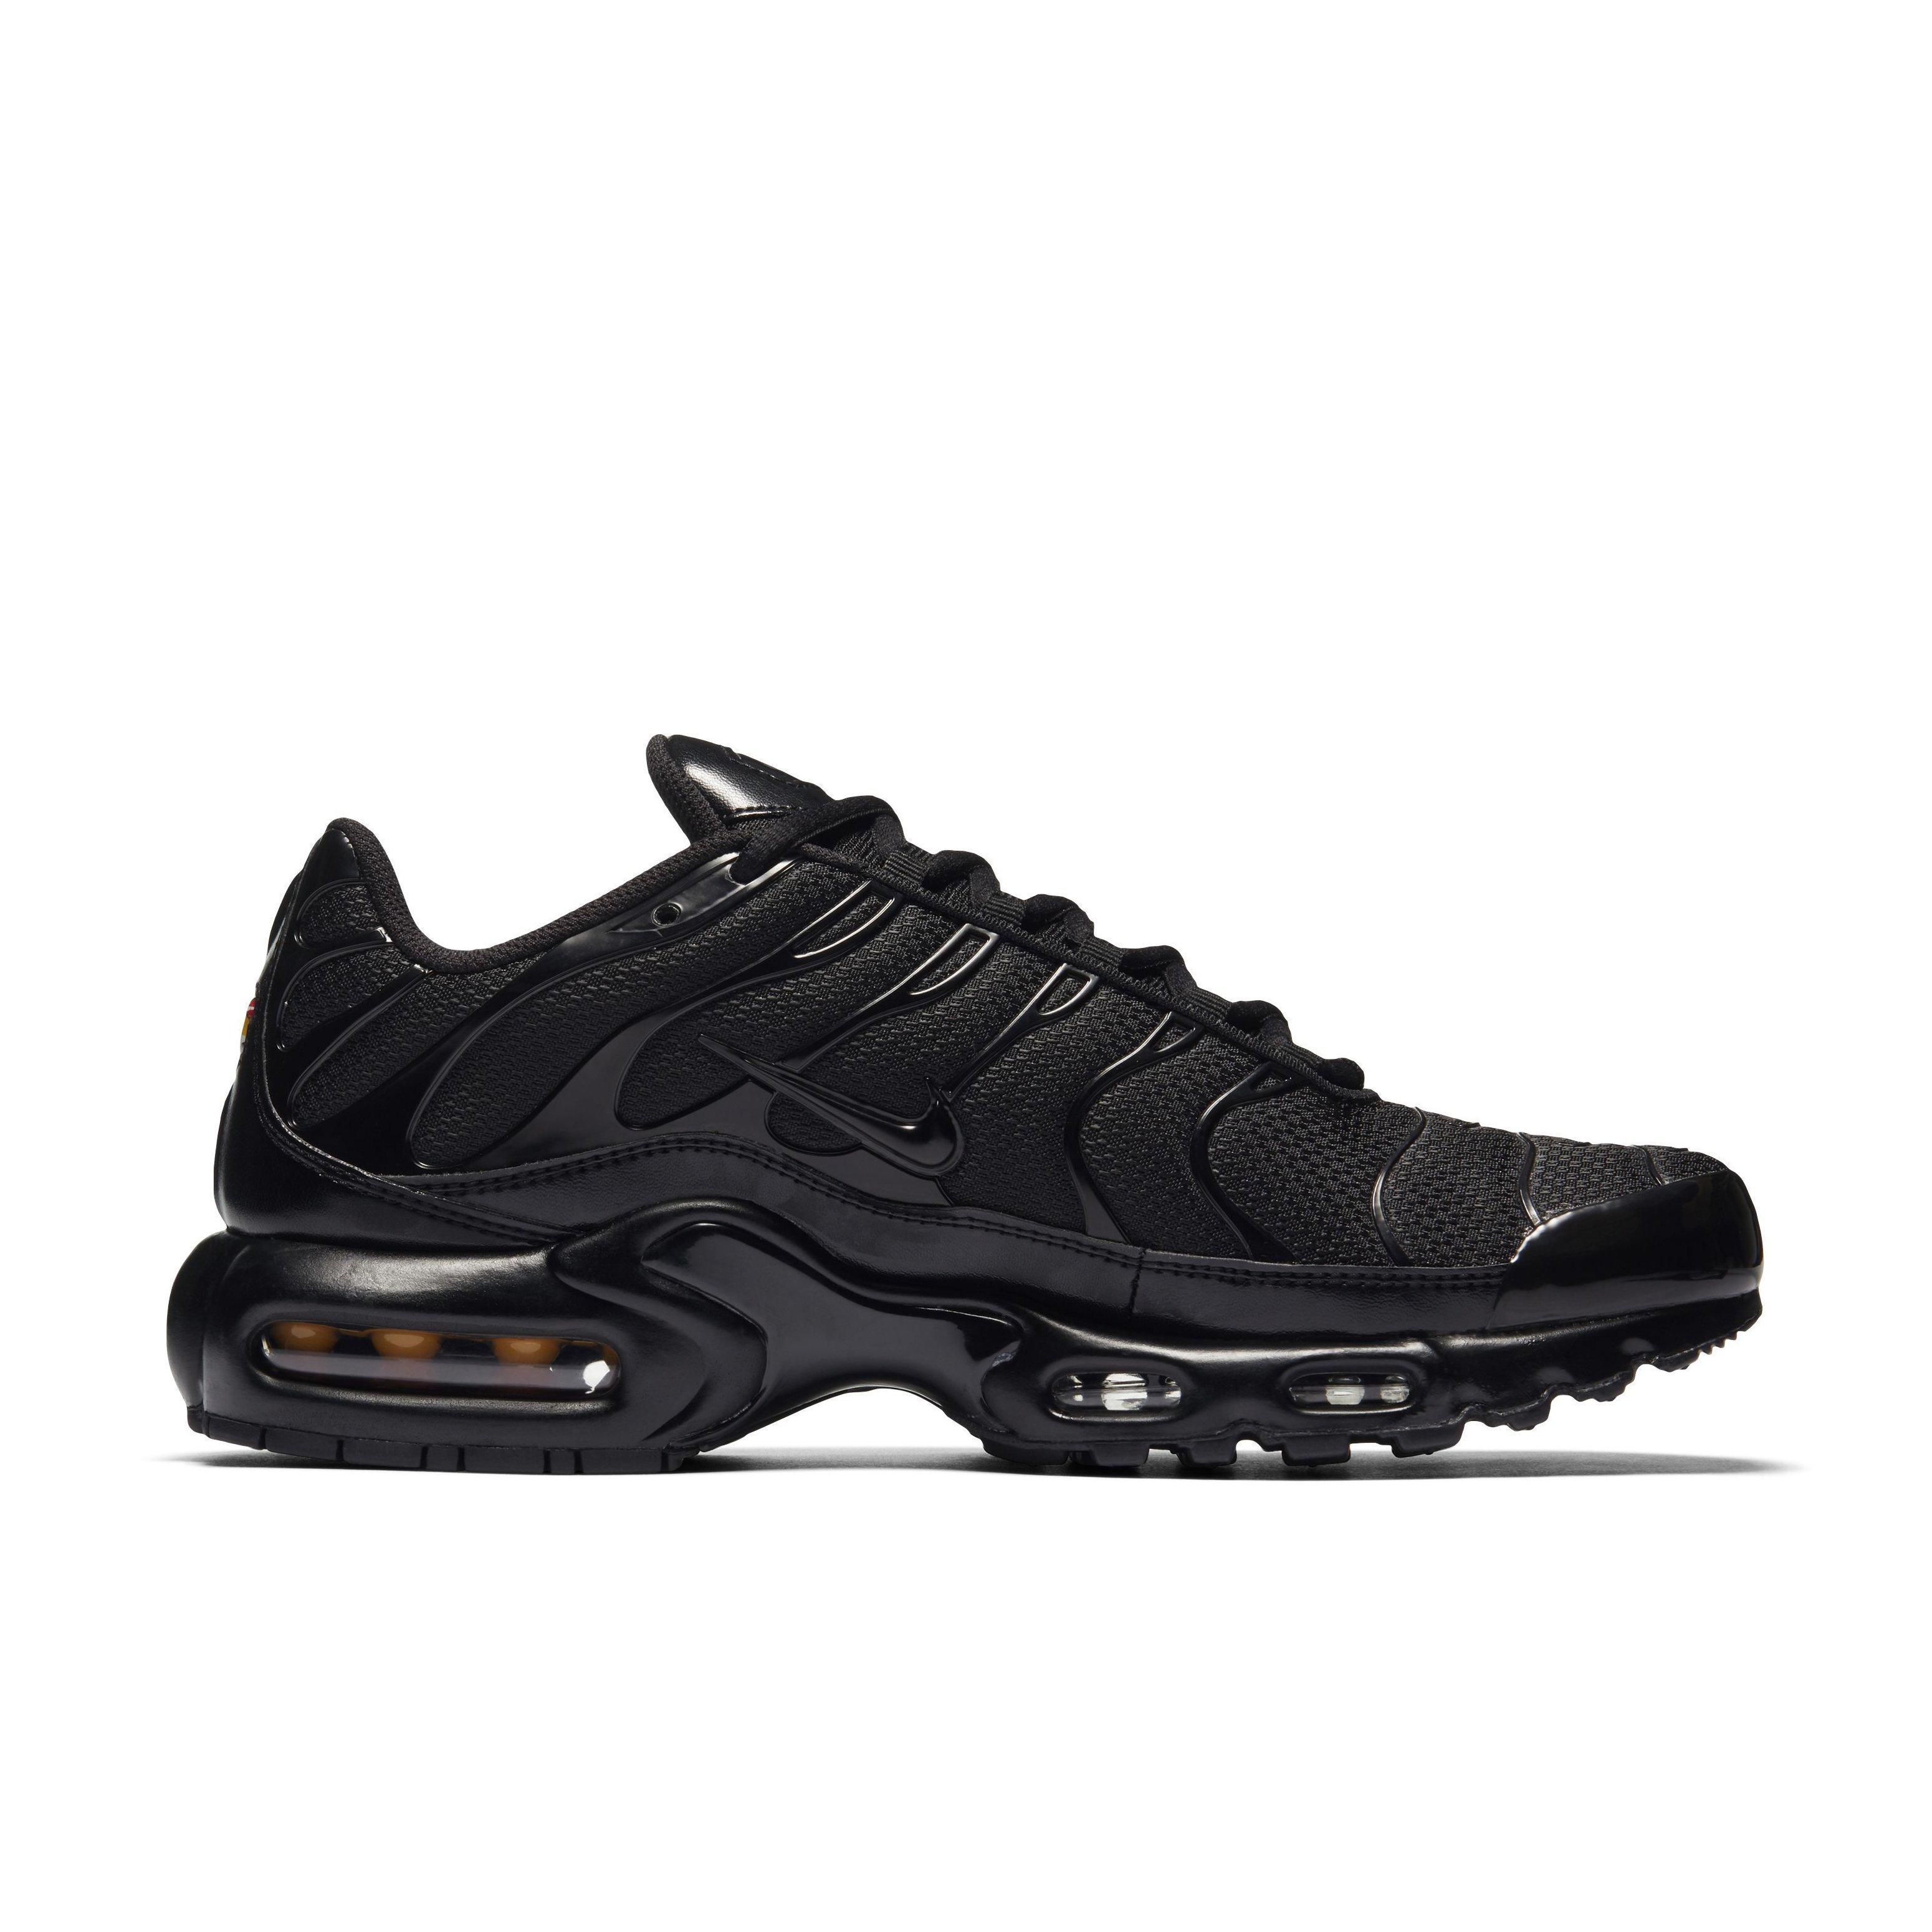 Mirar ropa Publicación Nike Air Max Plus "Black/Black/Black" Men's Shoe